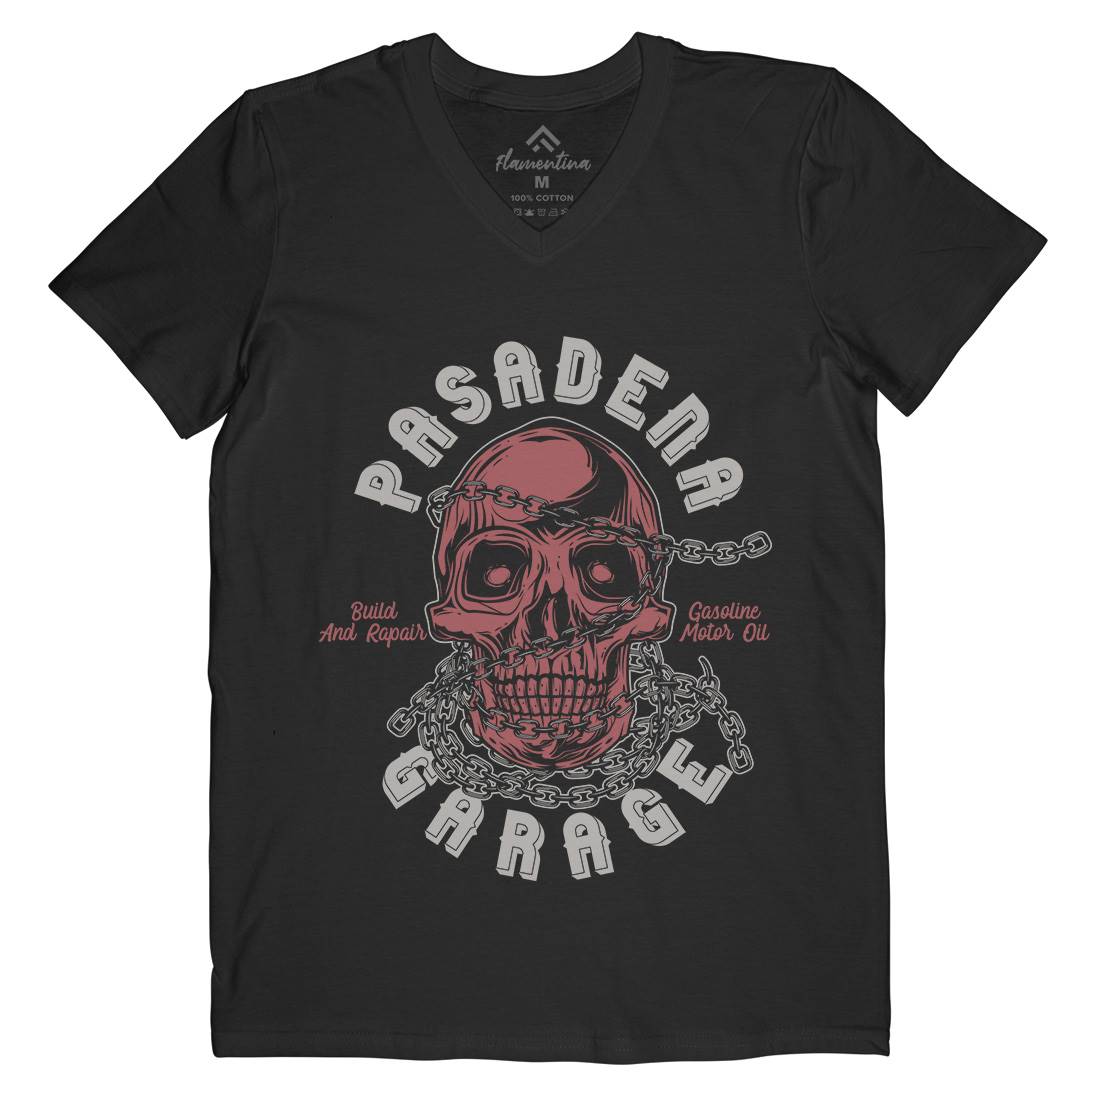 Pasadena Mens V-Neck T-Shirt Motorcycles B847